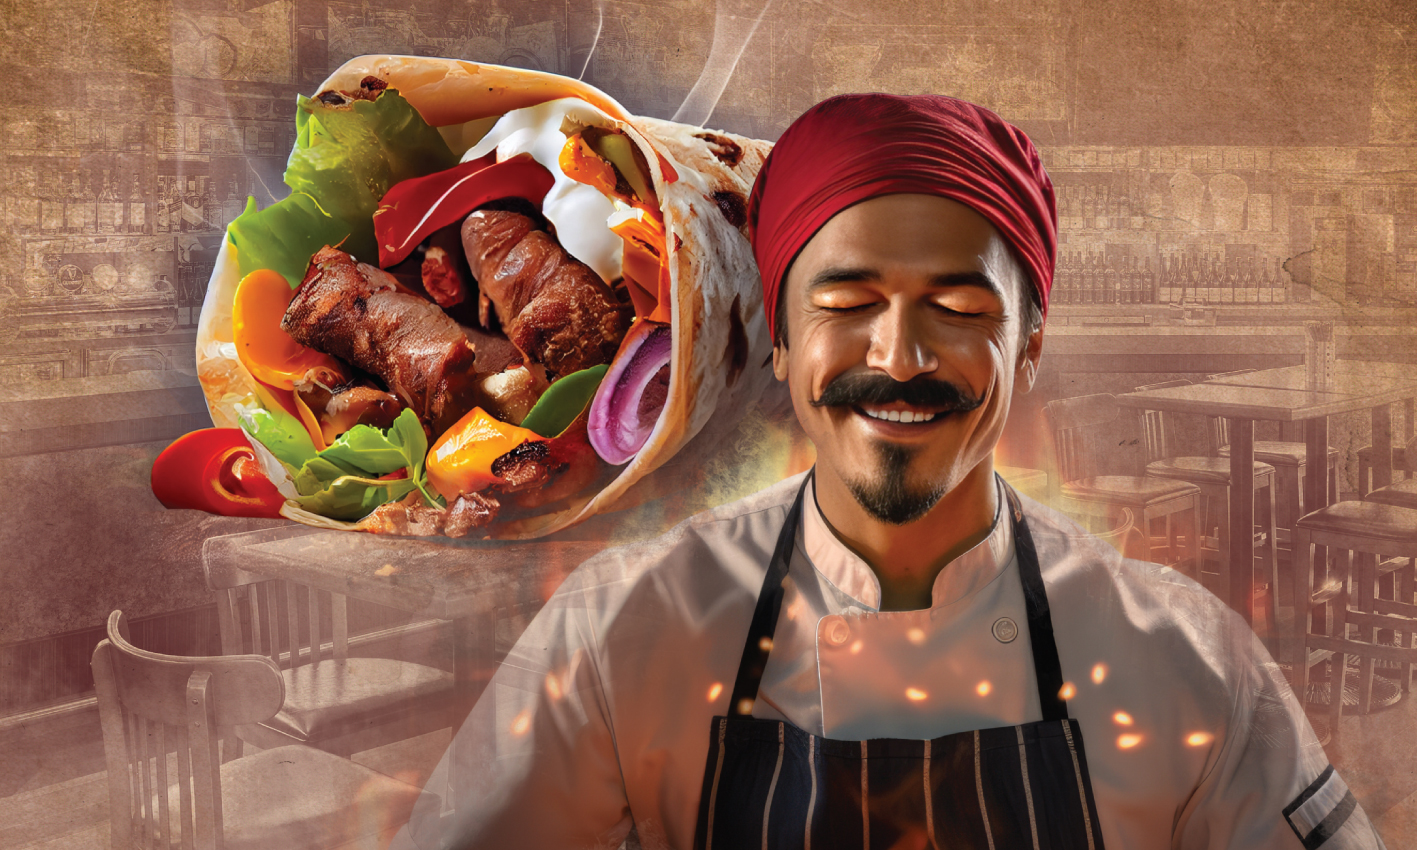 Turkish Doner Kebab